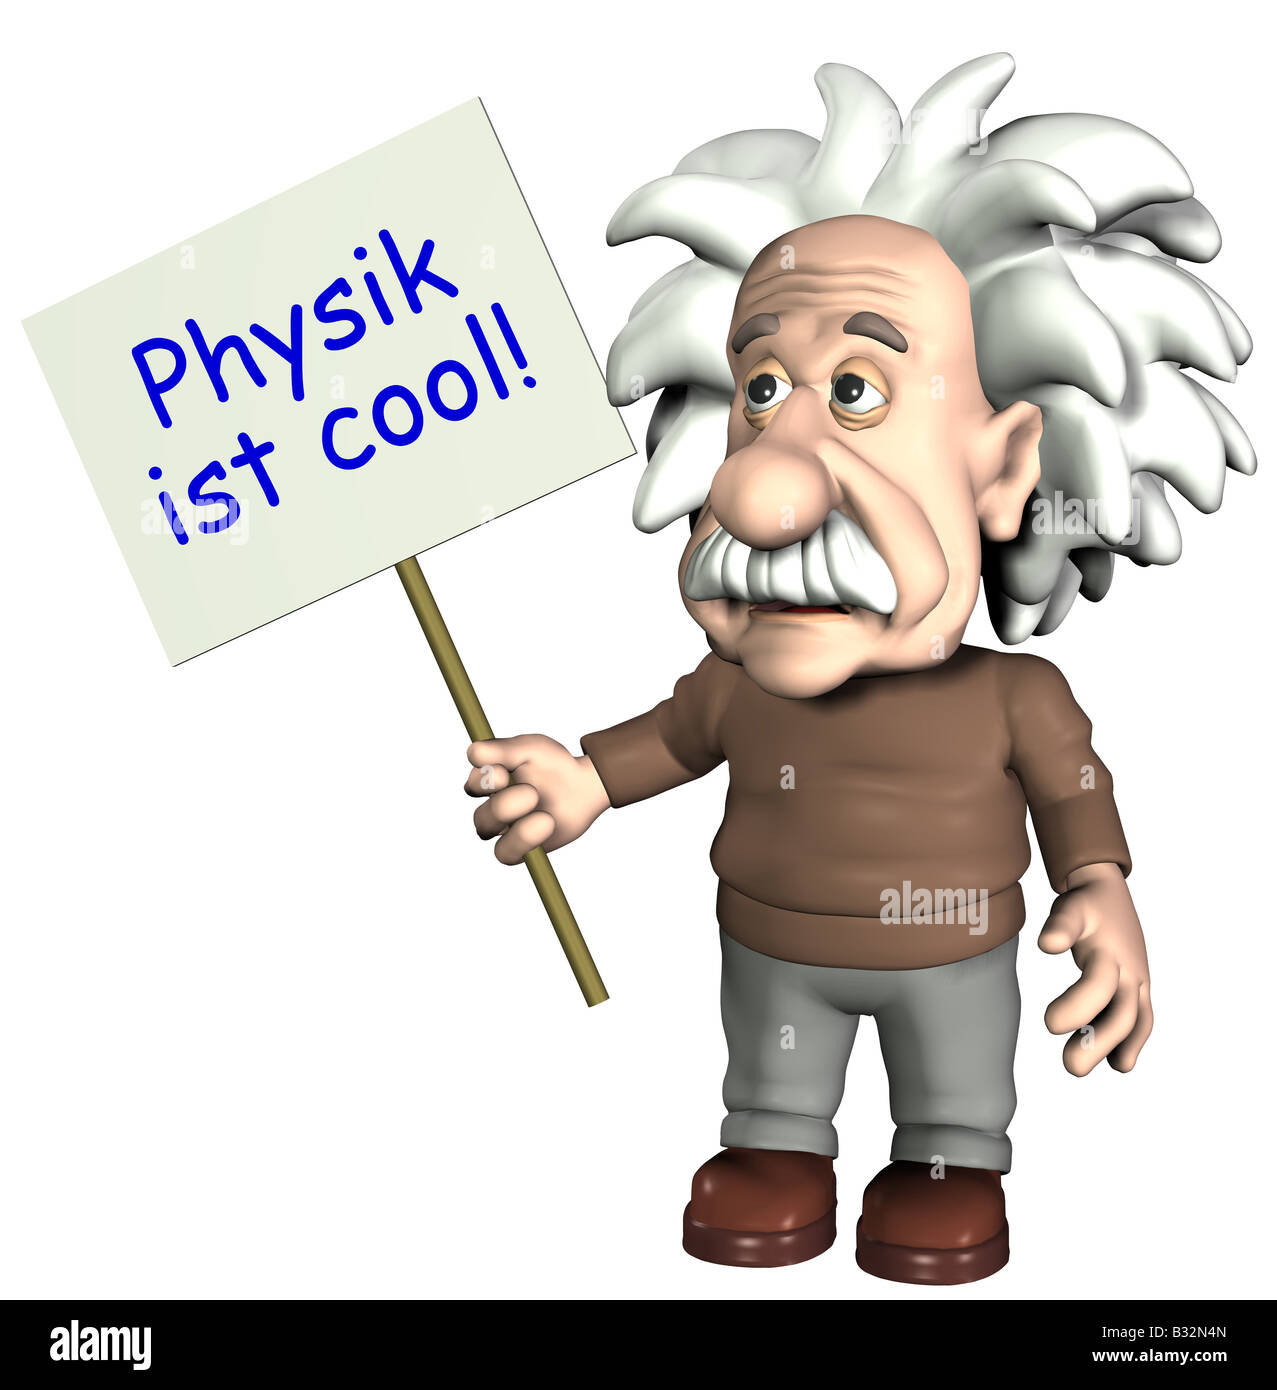 Albert Einstein with sign Stock Photo